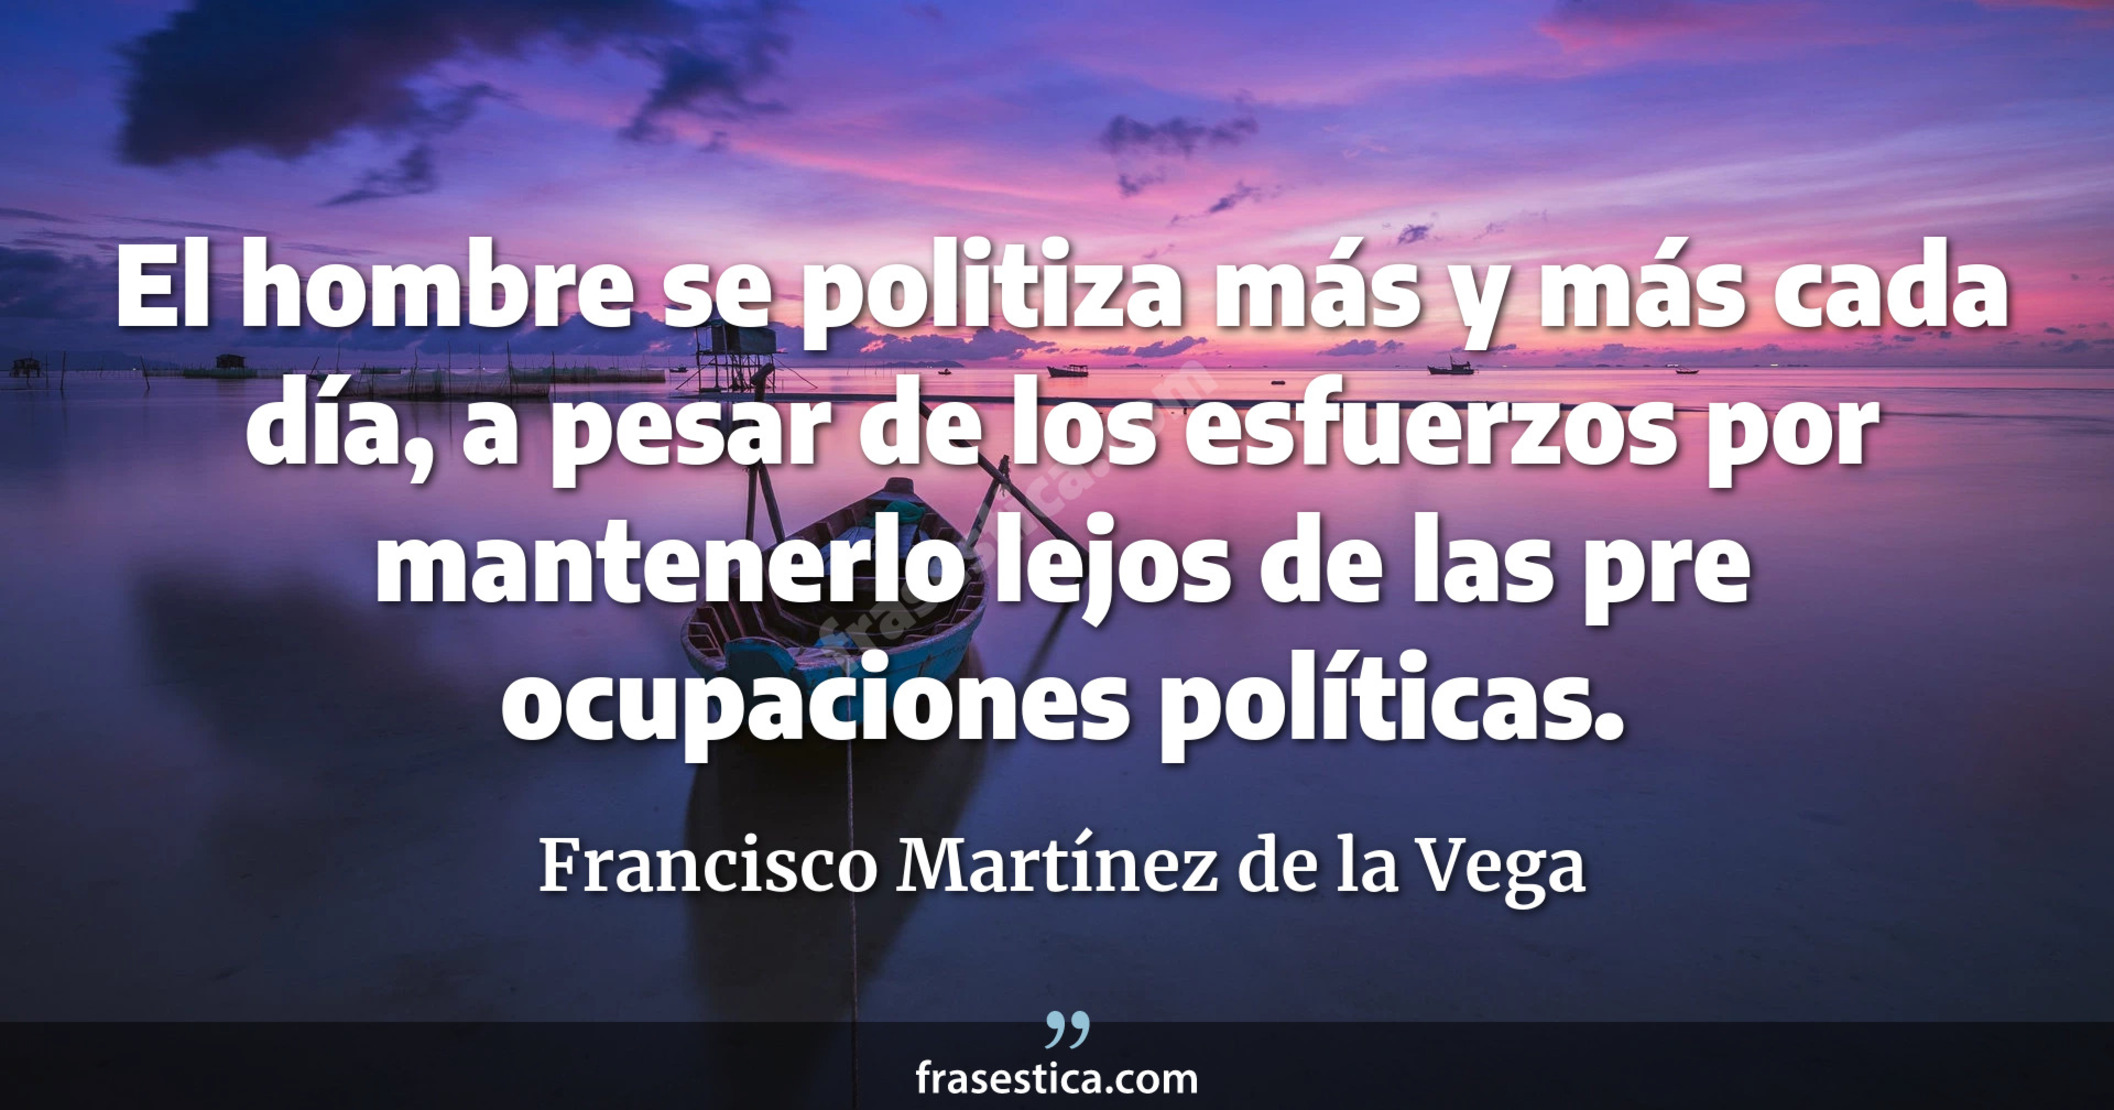 El hombre se politiza más y más cada día, a pesar de los esfuerzos por mantenerlo lejos de las pre ocupaciones políticas. - Francisco Martínez de la Vega